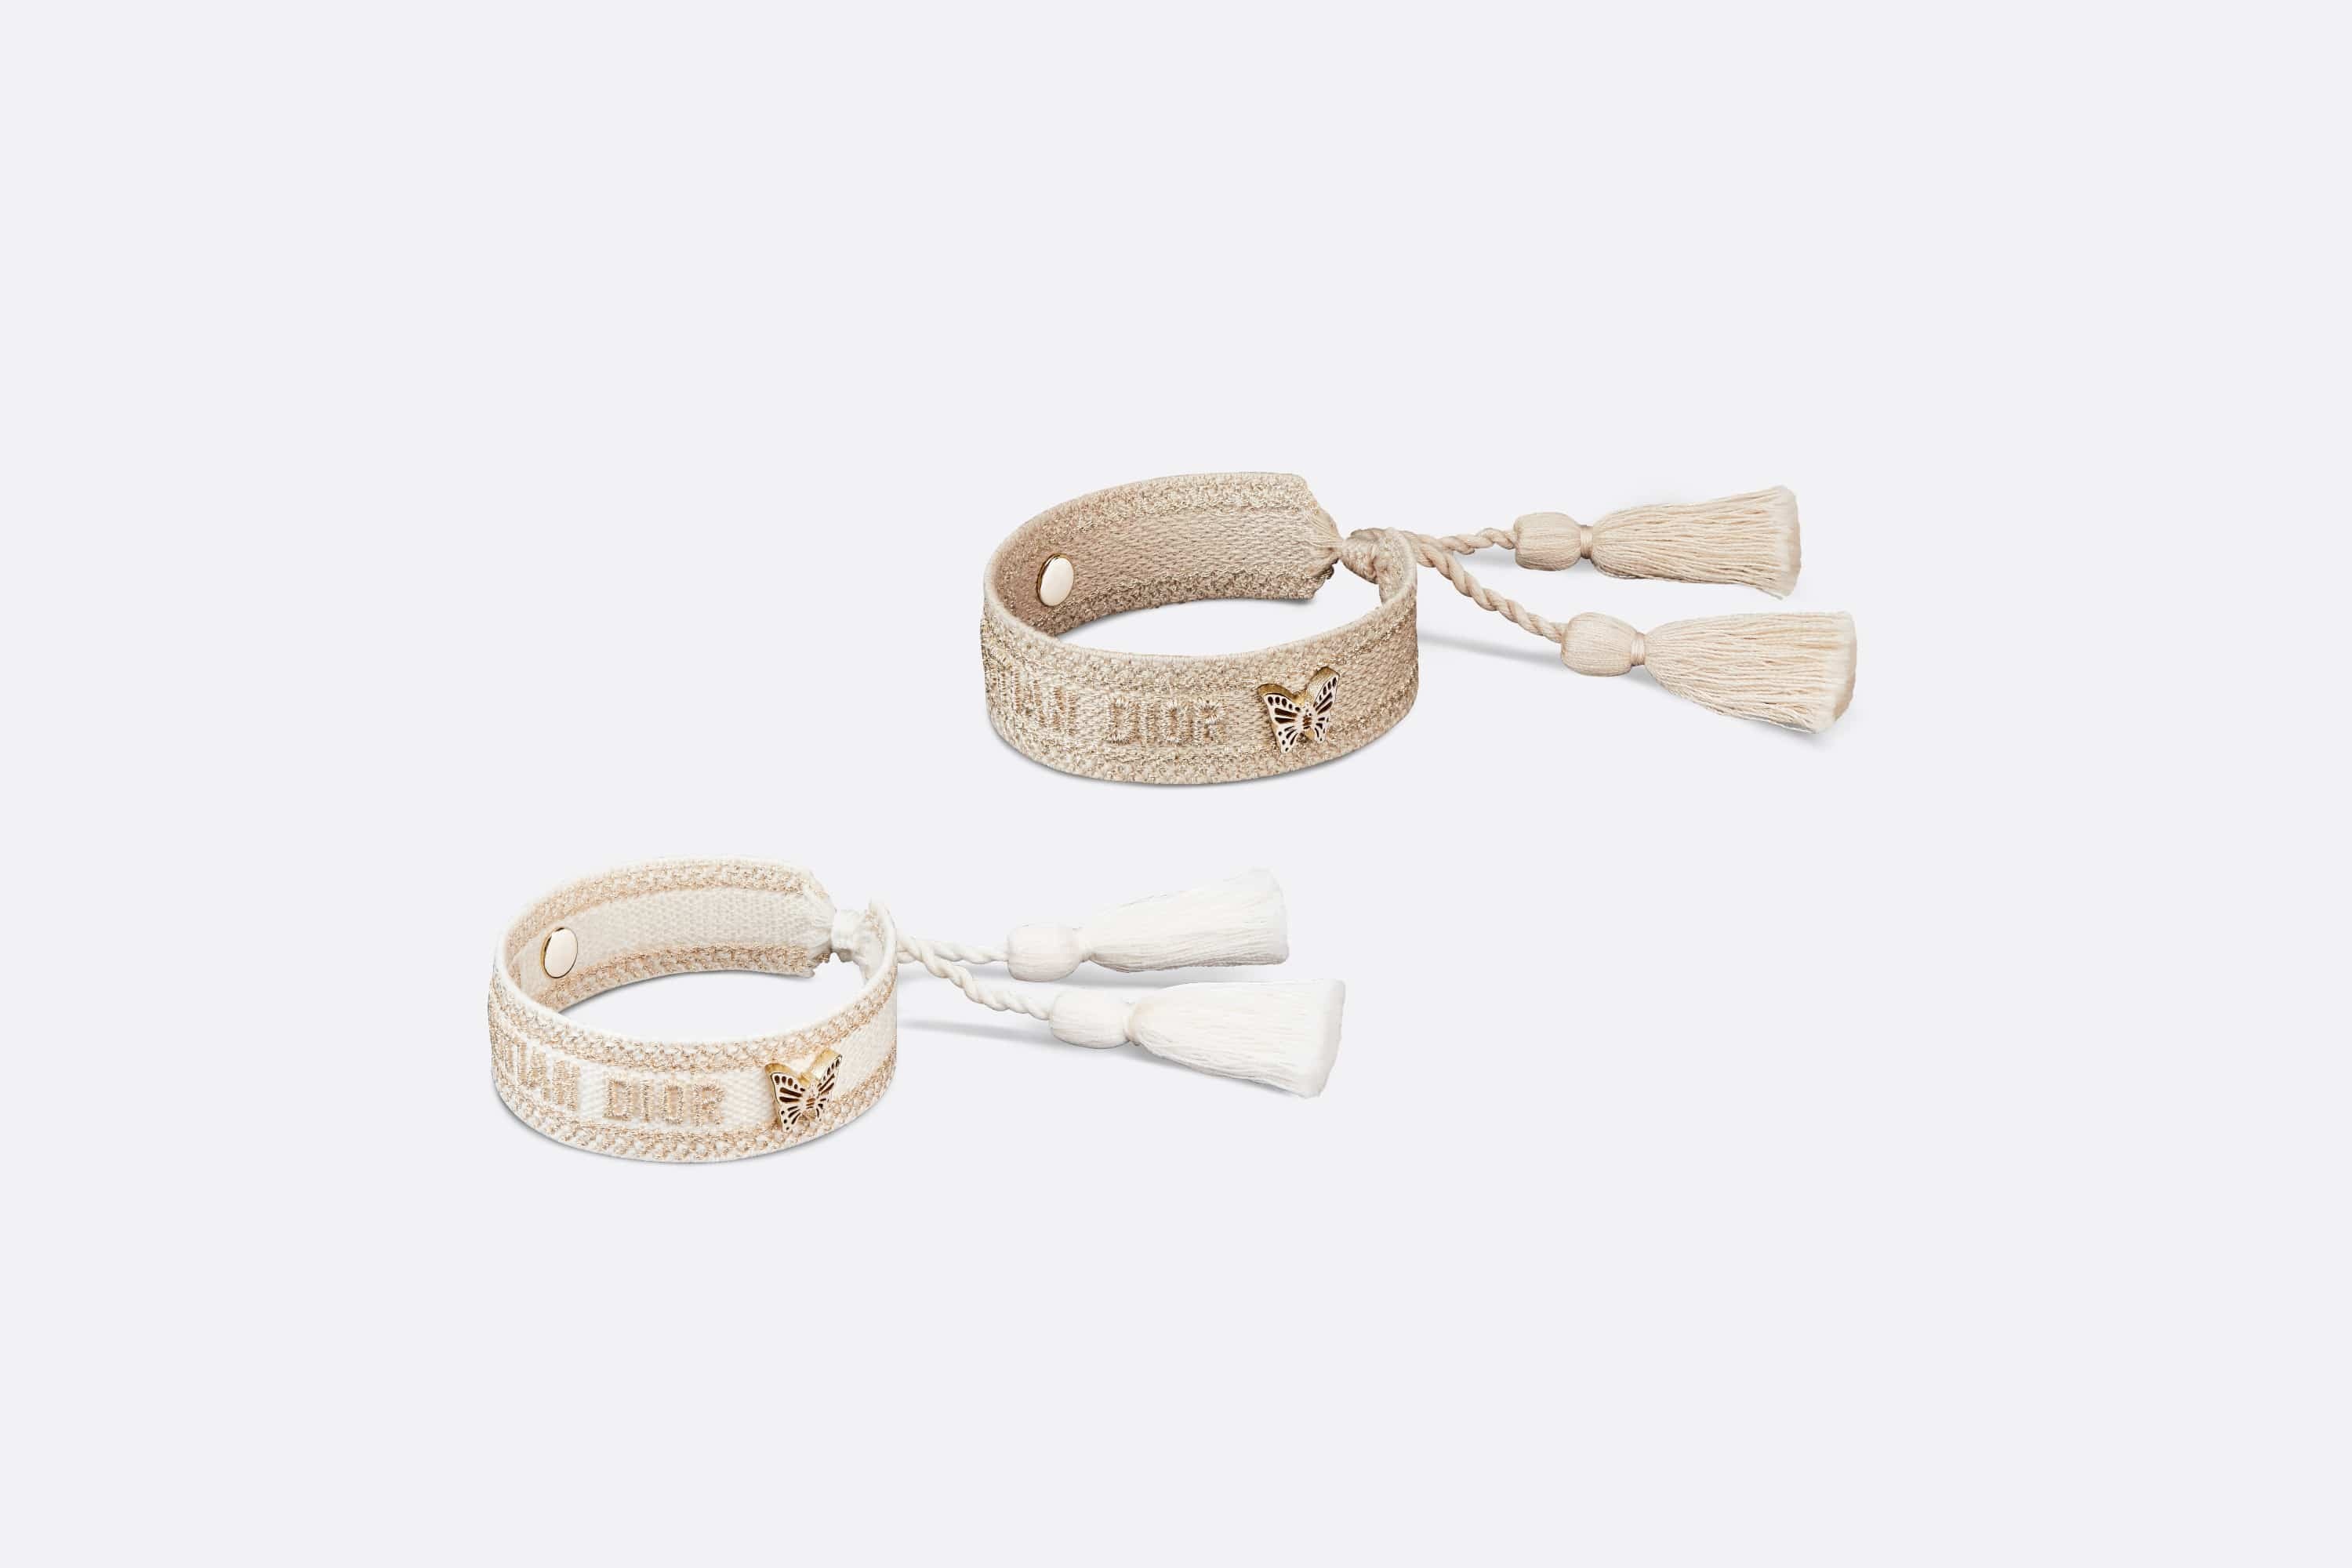 Christian Dior Bracelet Set - 3